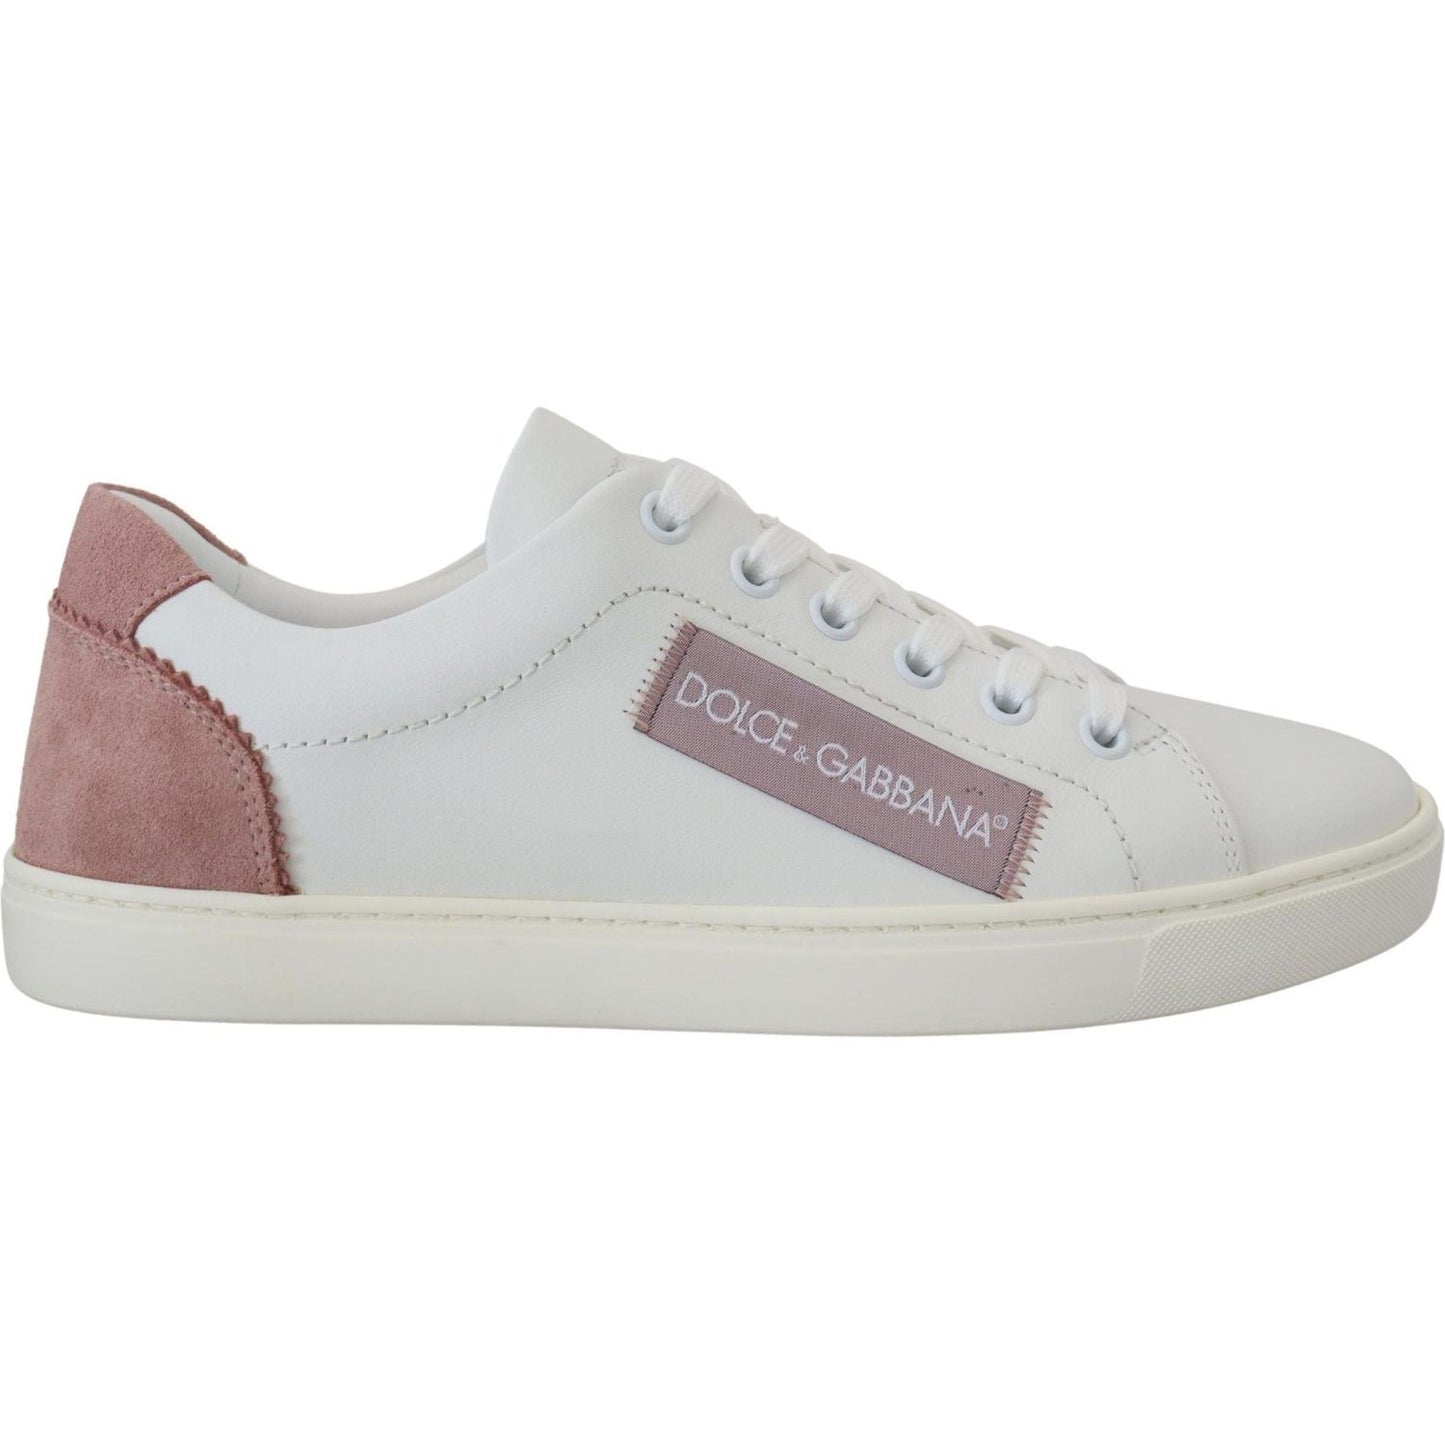 Dolce & GabbanaChic White Pink Leather Low-Top SneakersMcRichard Designer Brands£359.00